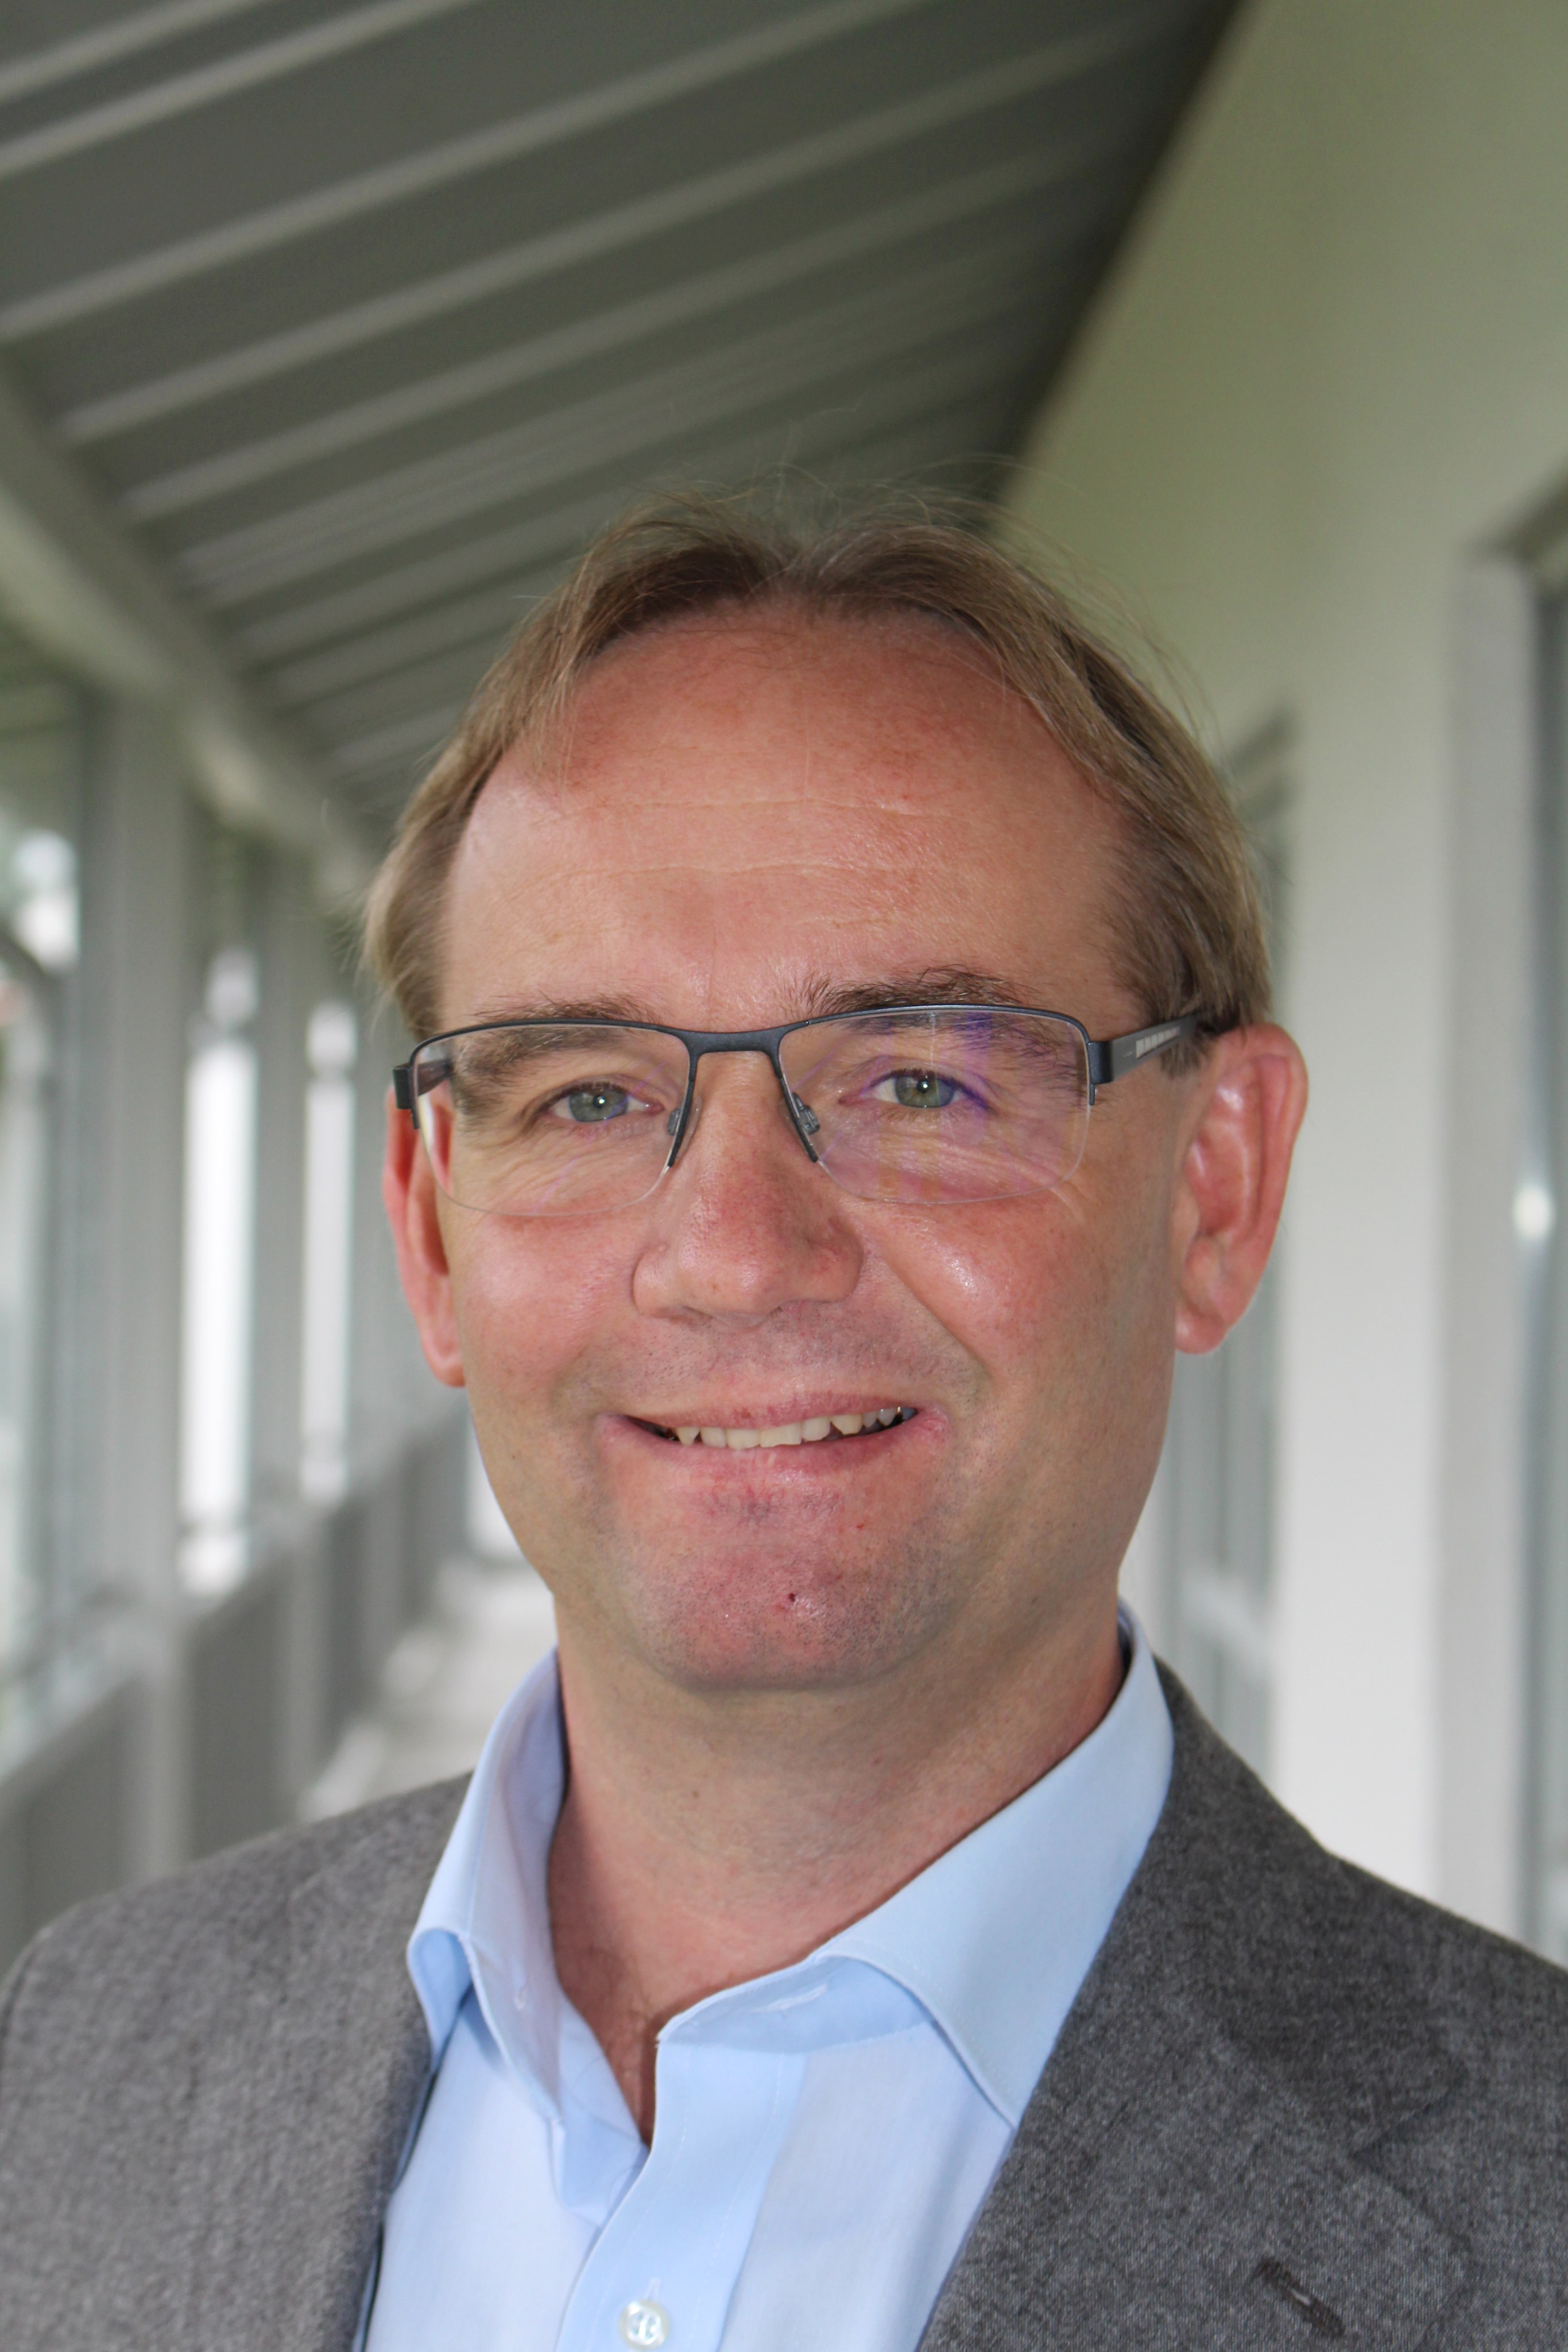 Pirvatdozent Dr. Johannes Tschoep wird neuer Chefarzt der Anästhesie am Bezirkskrankenhaus Günzburg